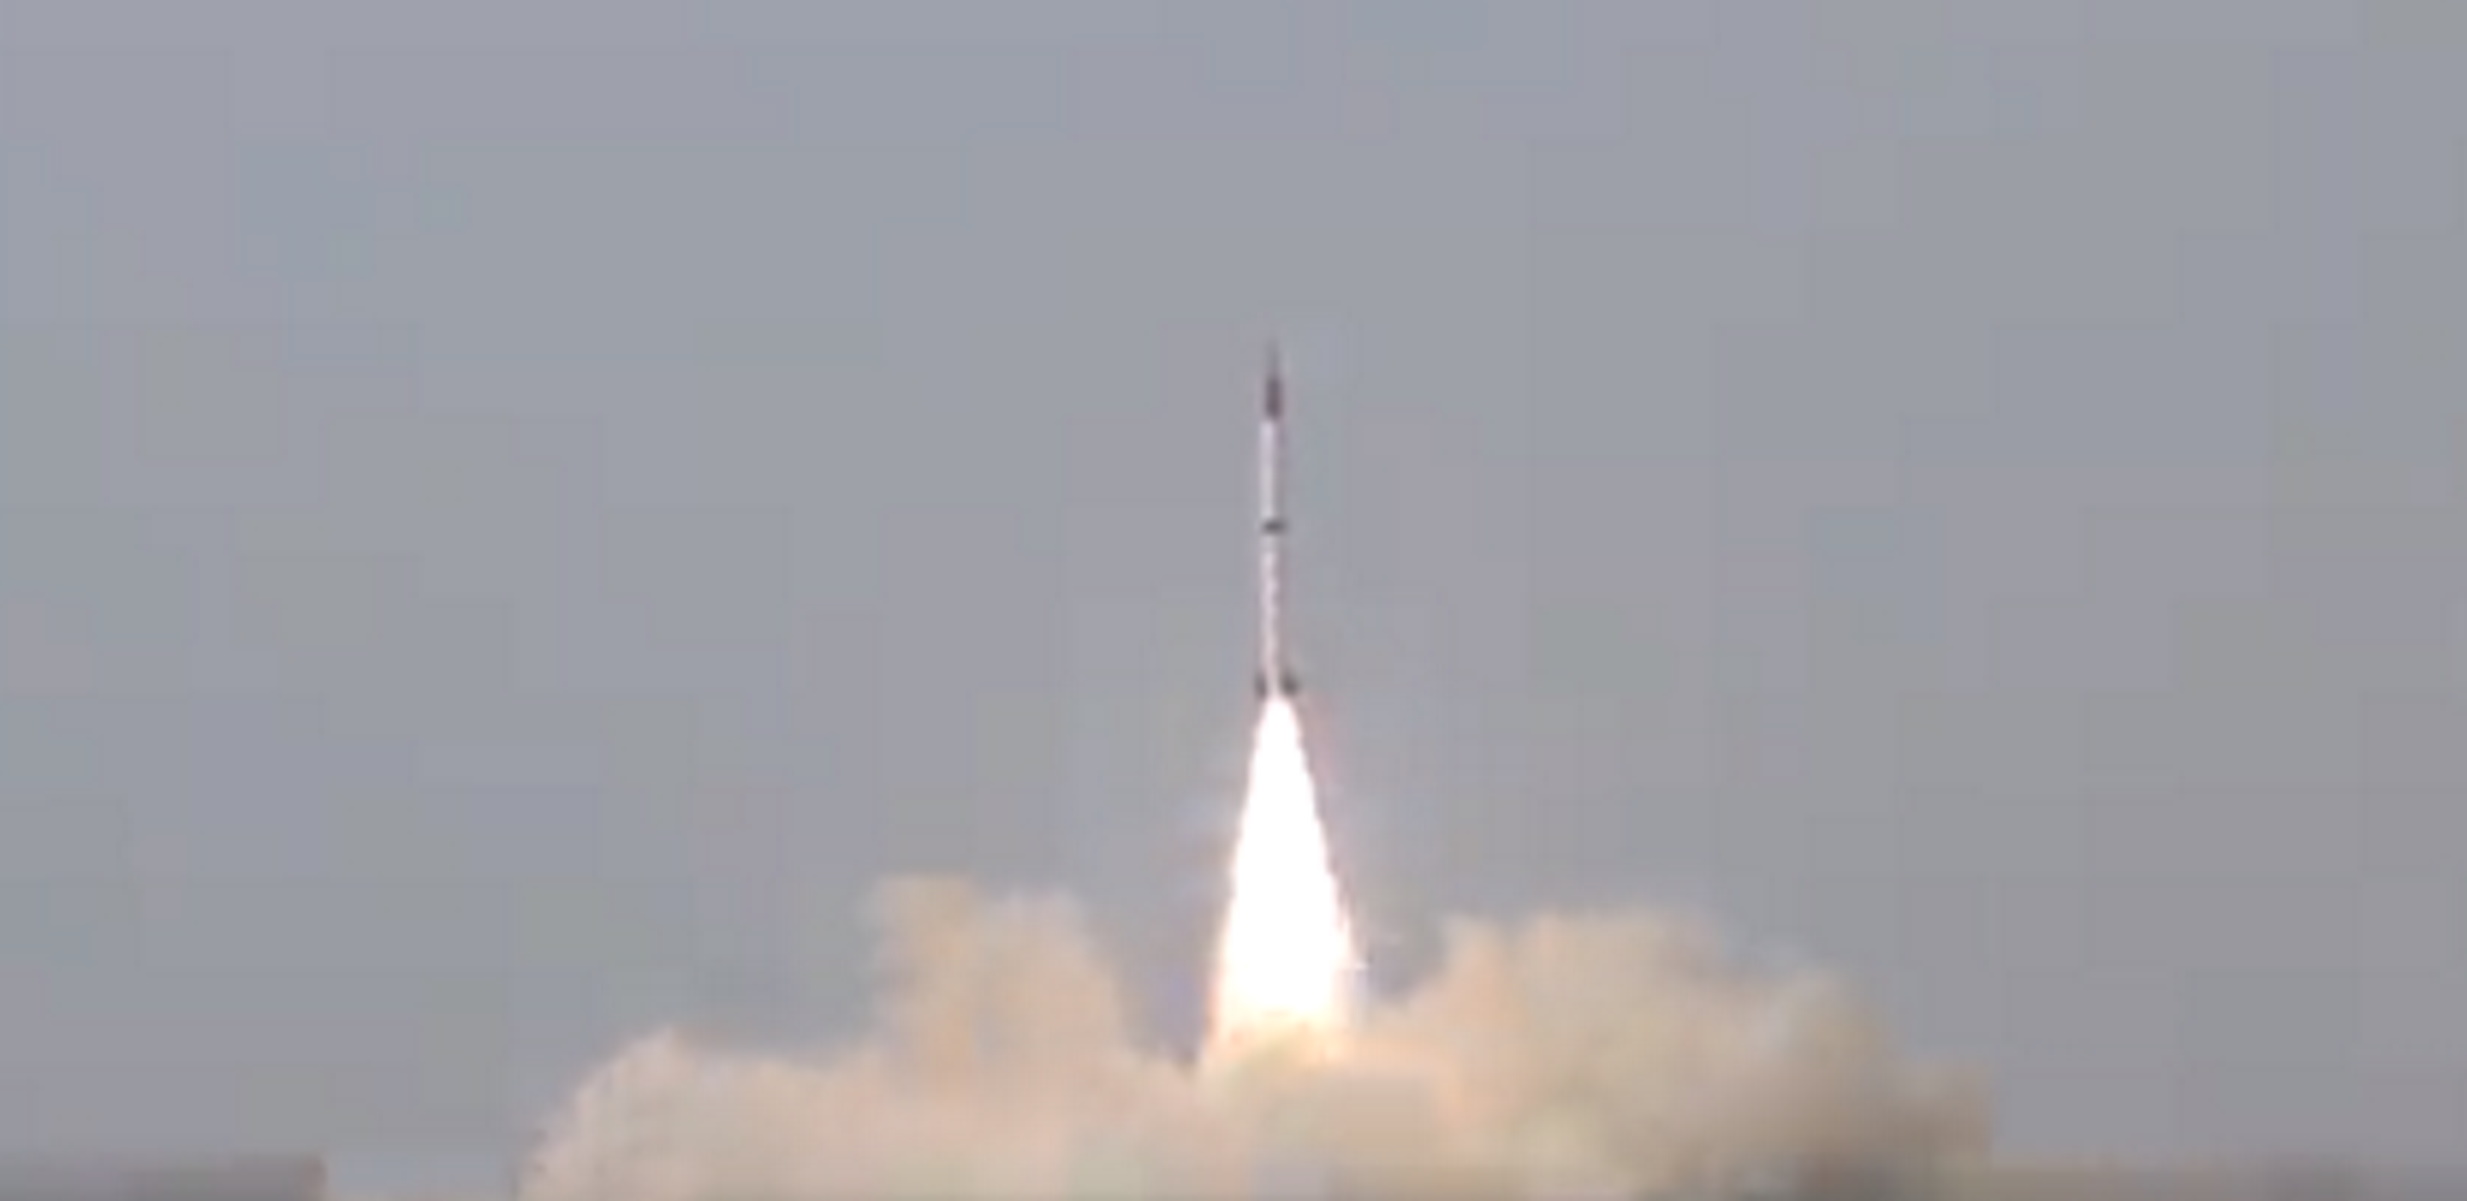 Το Πακιστάν εκτόξευσε Shaheen-III «απαντώντας» σε πυραυλική δοκιμή της Ινδίας